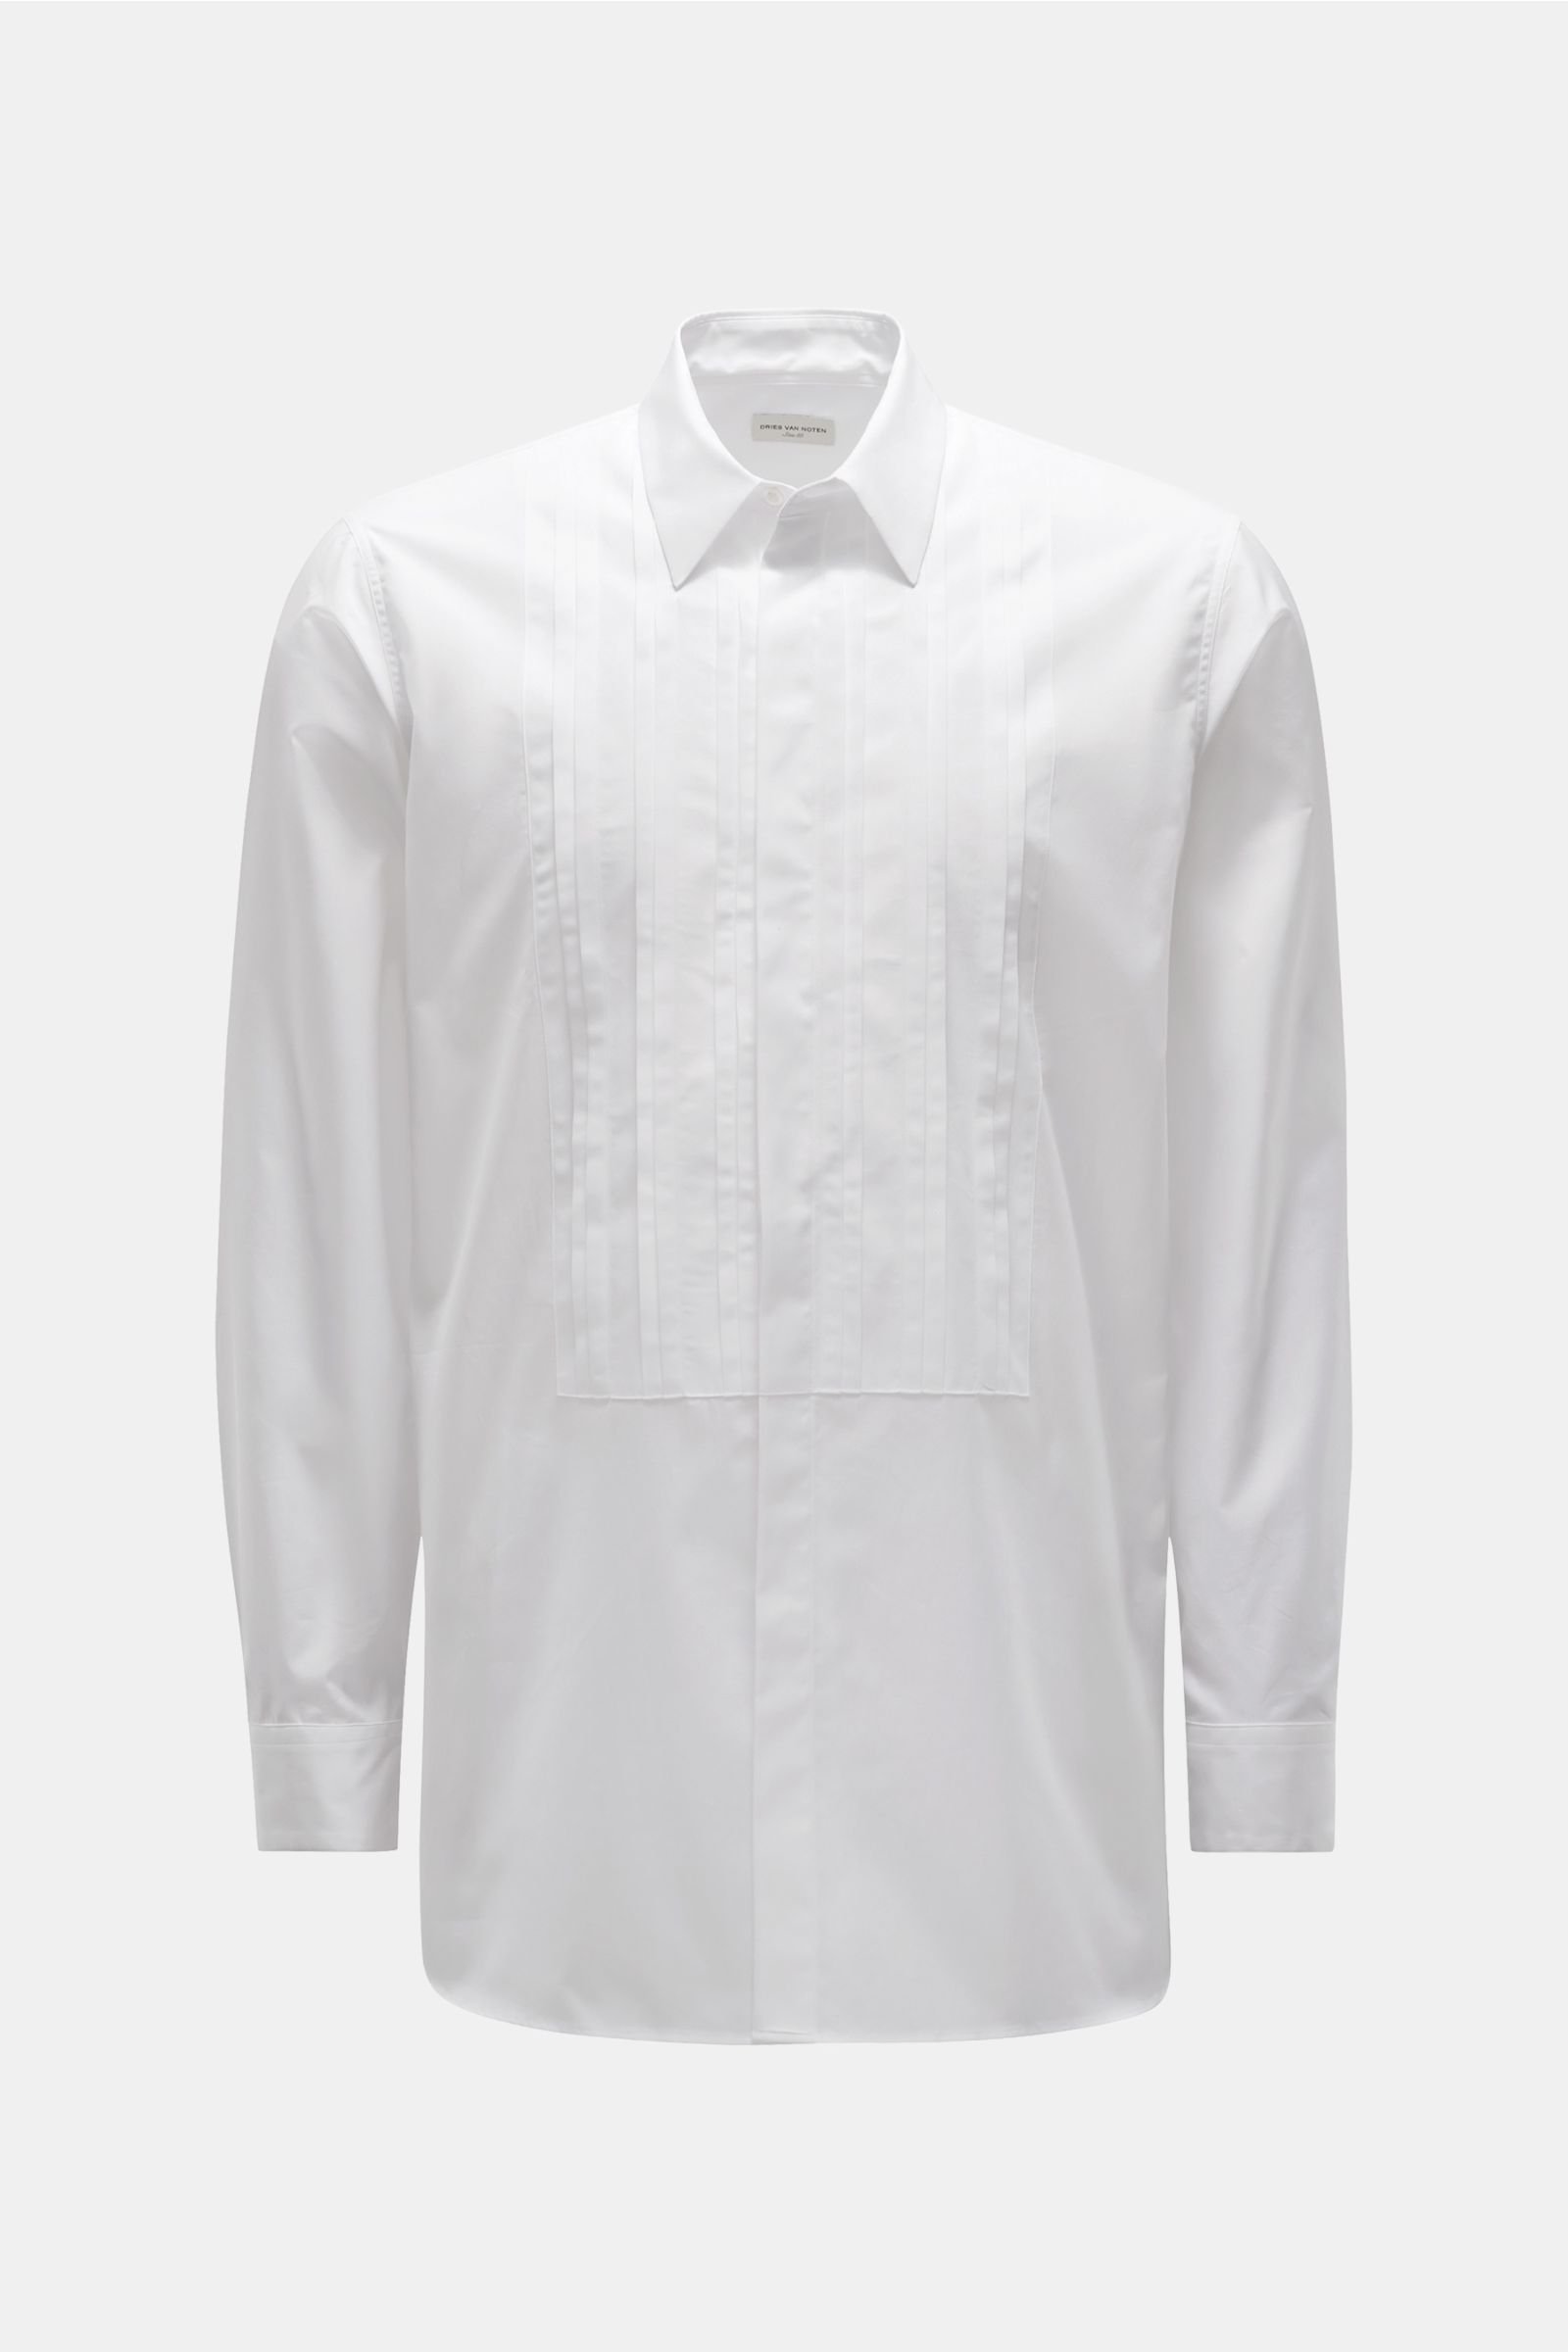 DRIES VAN NOTEN casual shirt Kent collar white | BRAUN Hamburg